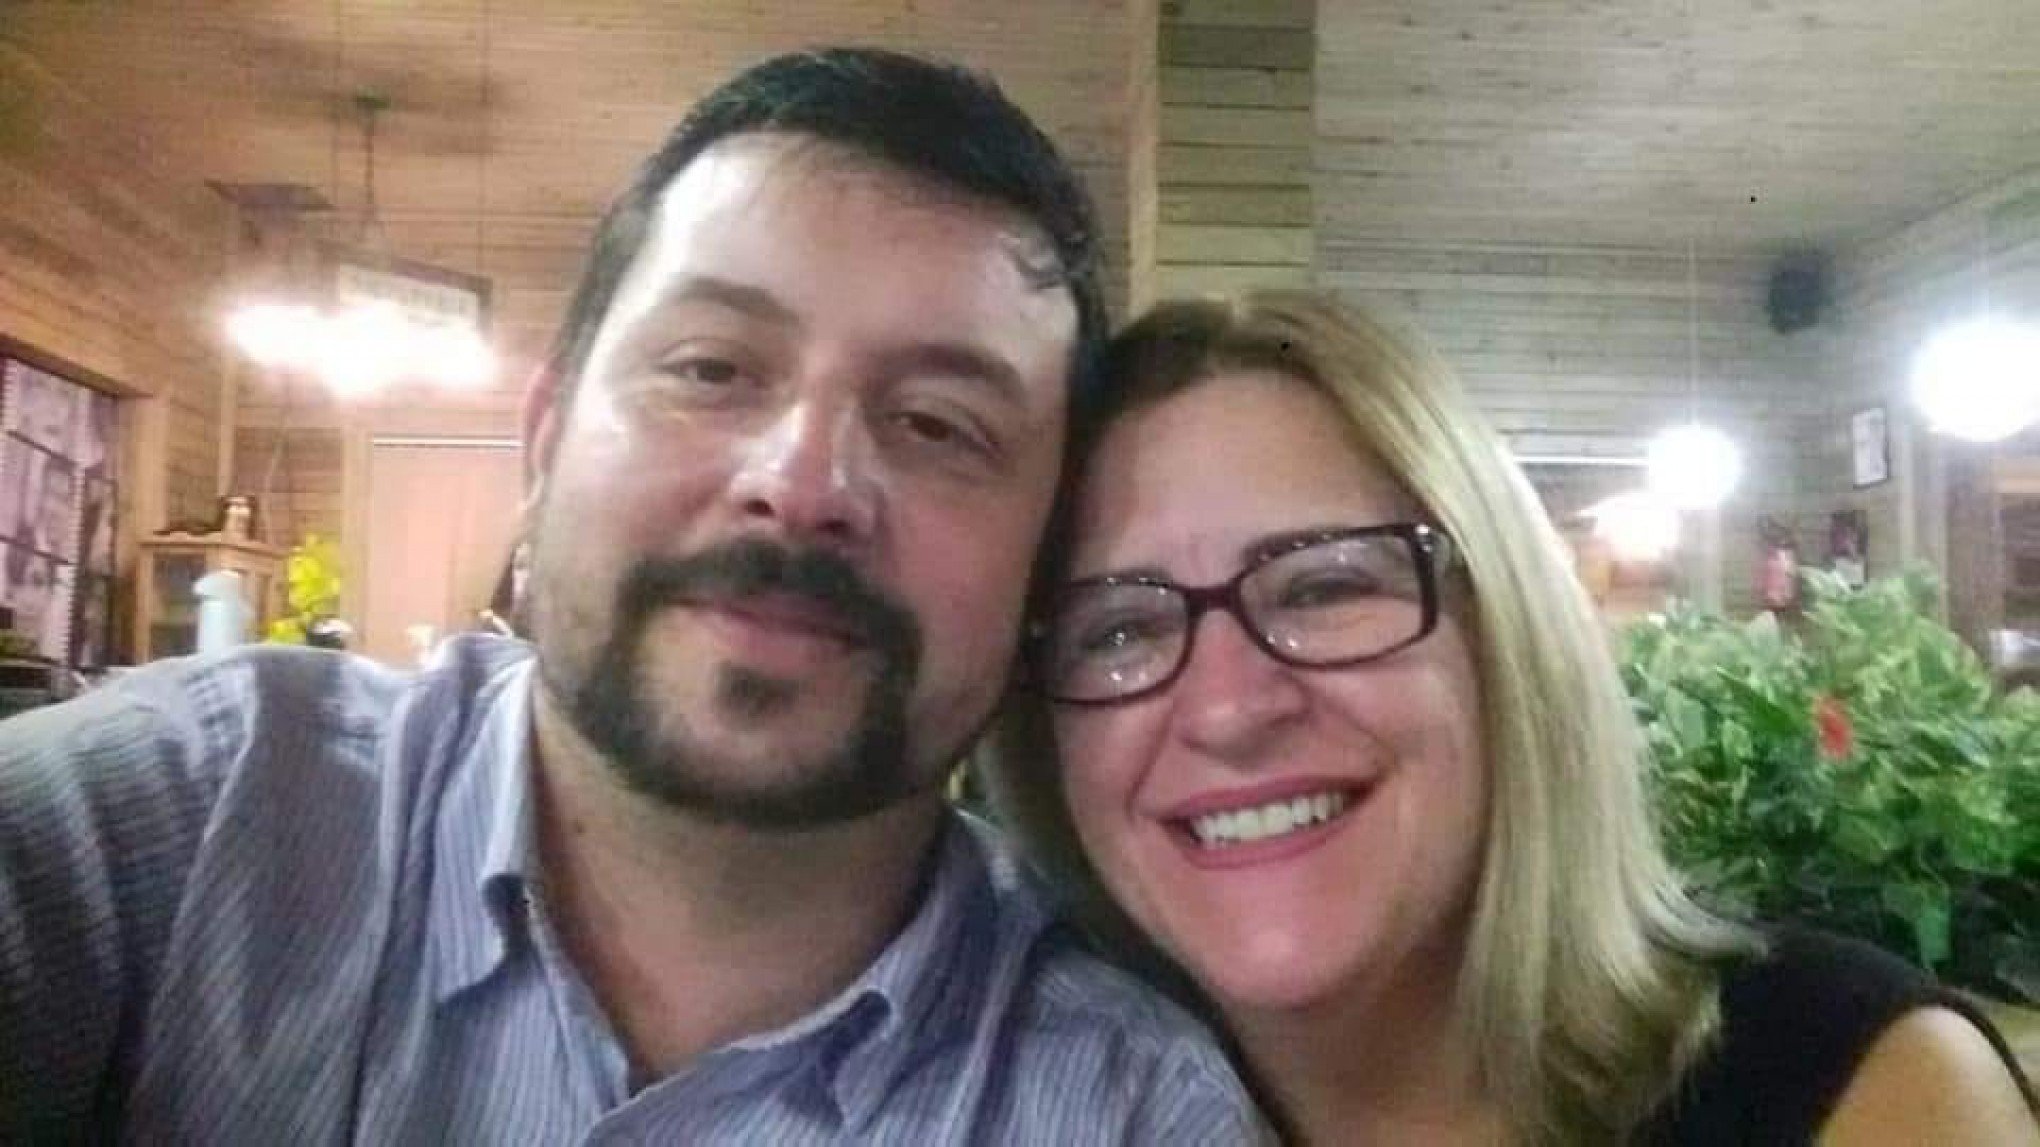 CONCRETADA NA GELADEIRA: Companheiro confessa morte de ex-candidata a vereadora e alega que estava possuído por demônios